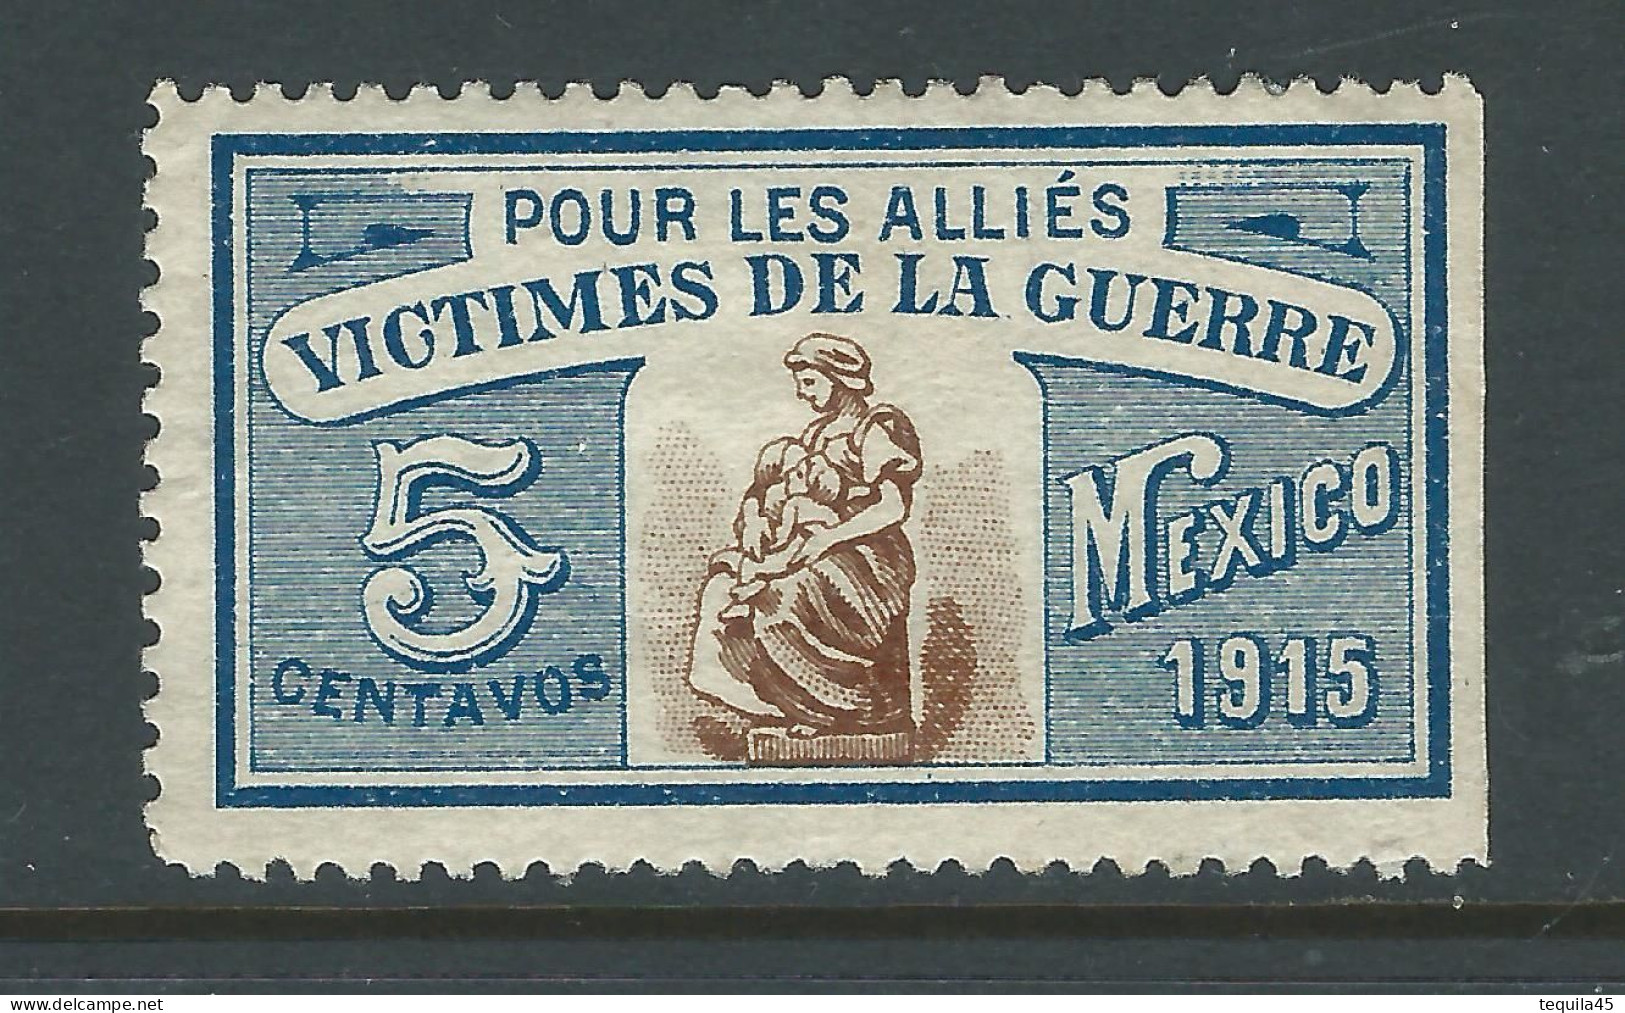 VIGNETTE CROIX-ROUGE Non DELANDRE FRANCE Comité De MEXICO 1915 WWI WW1 Cinderella Poster Stamp 1914 1918 War - Red Cross